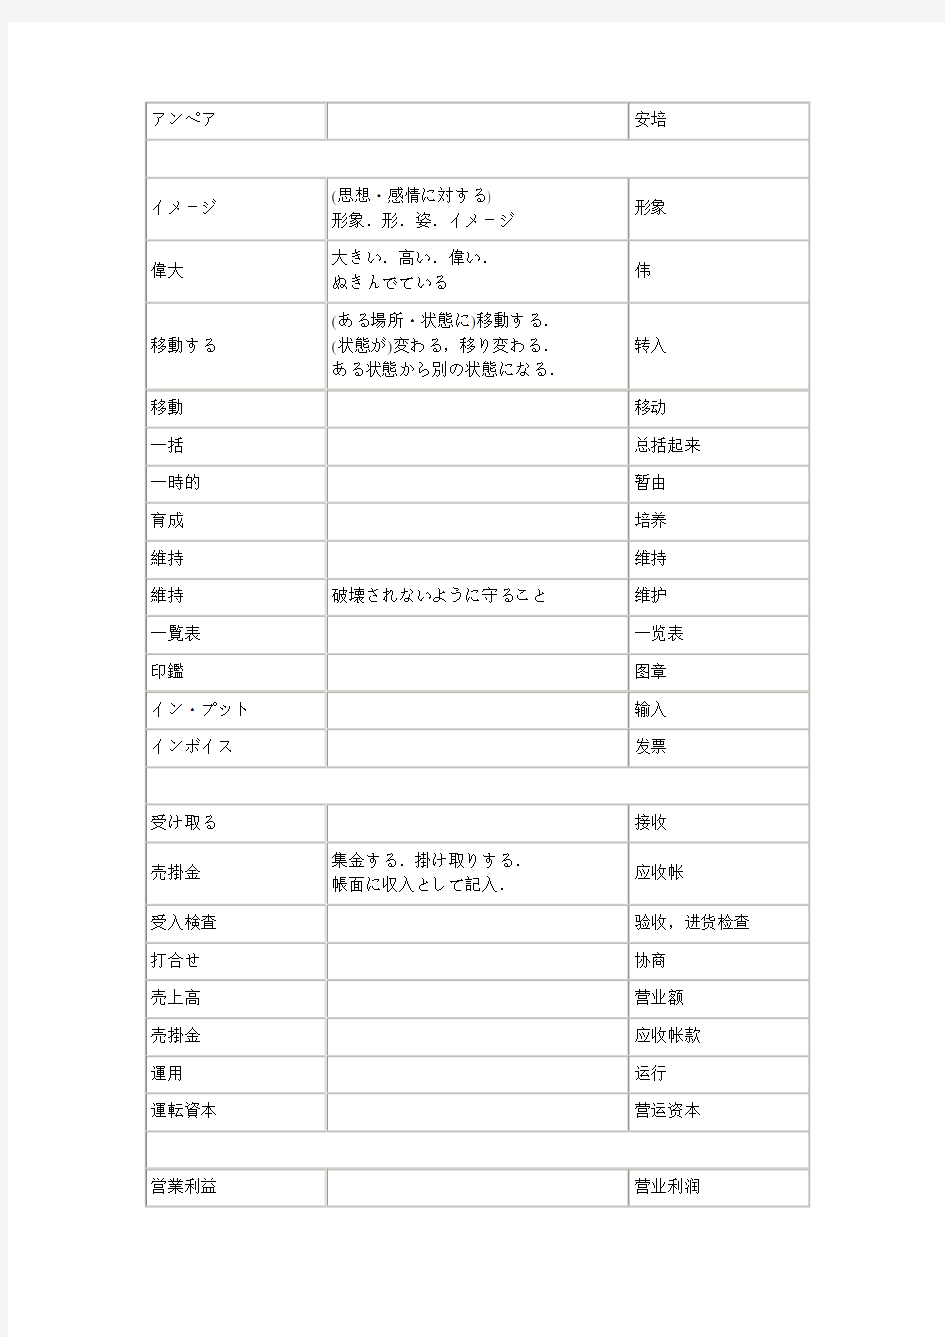 生产管理日本语词汇